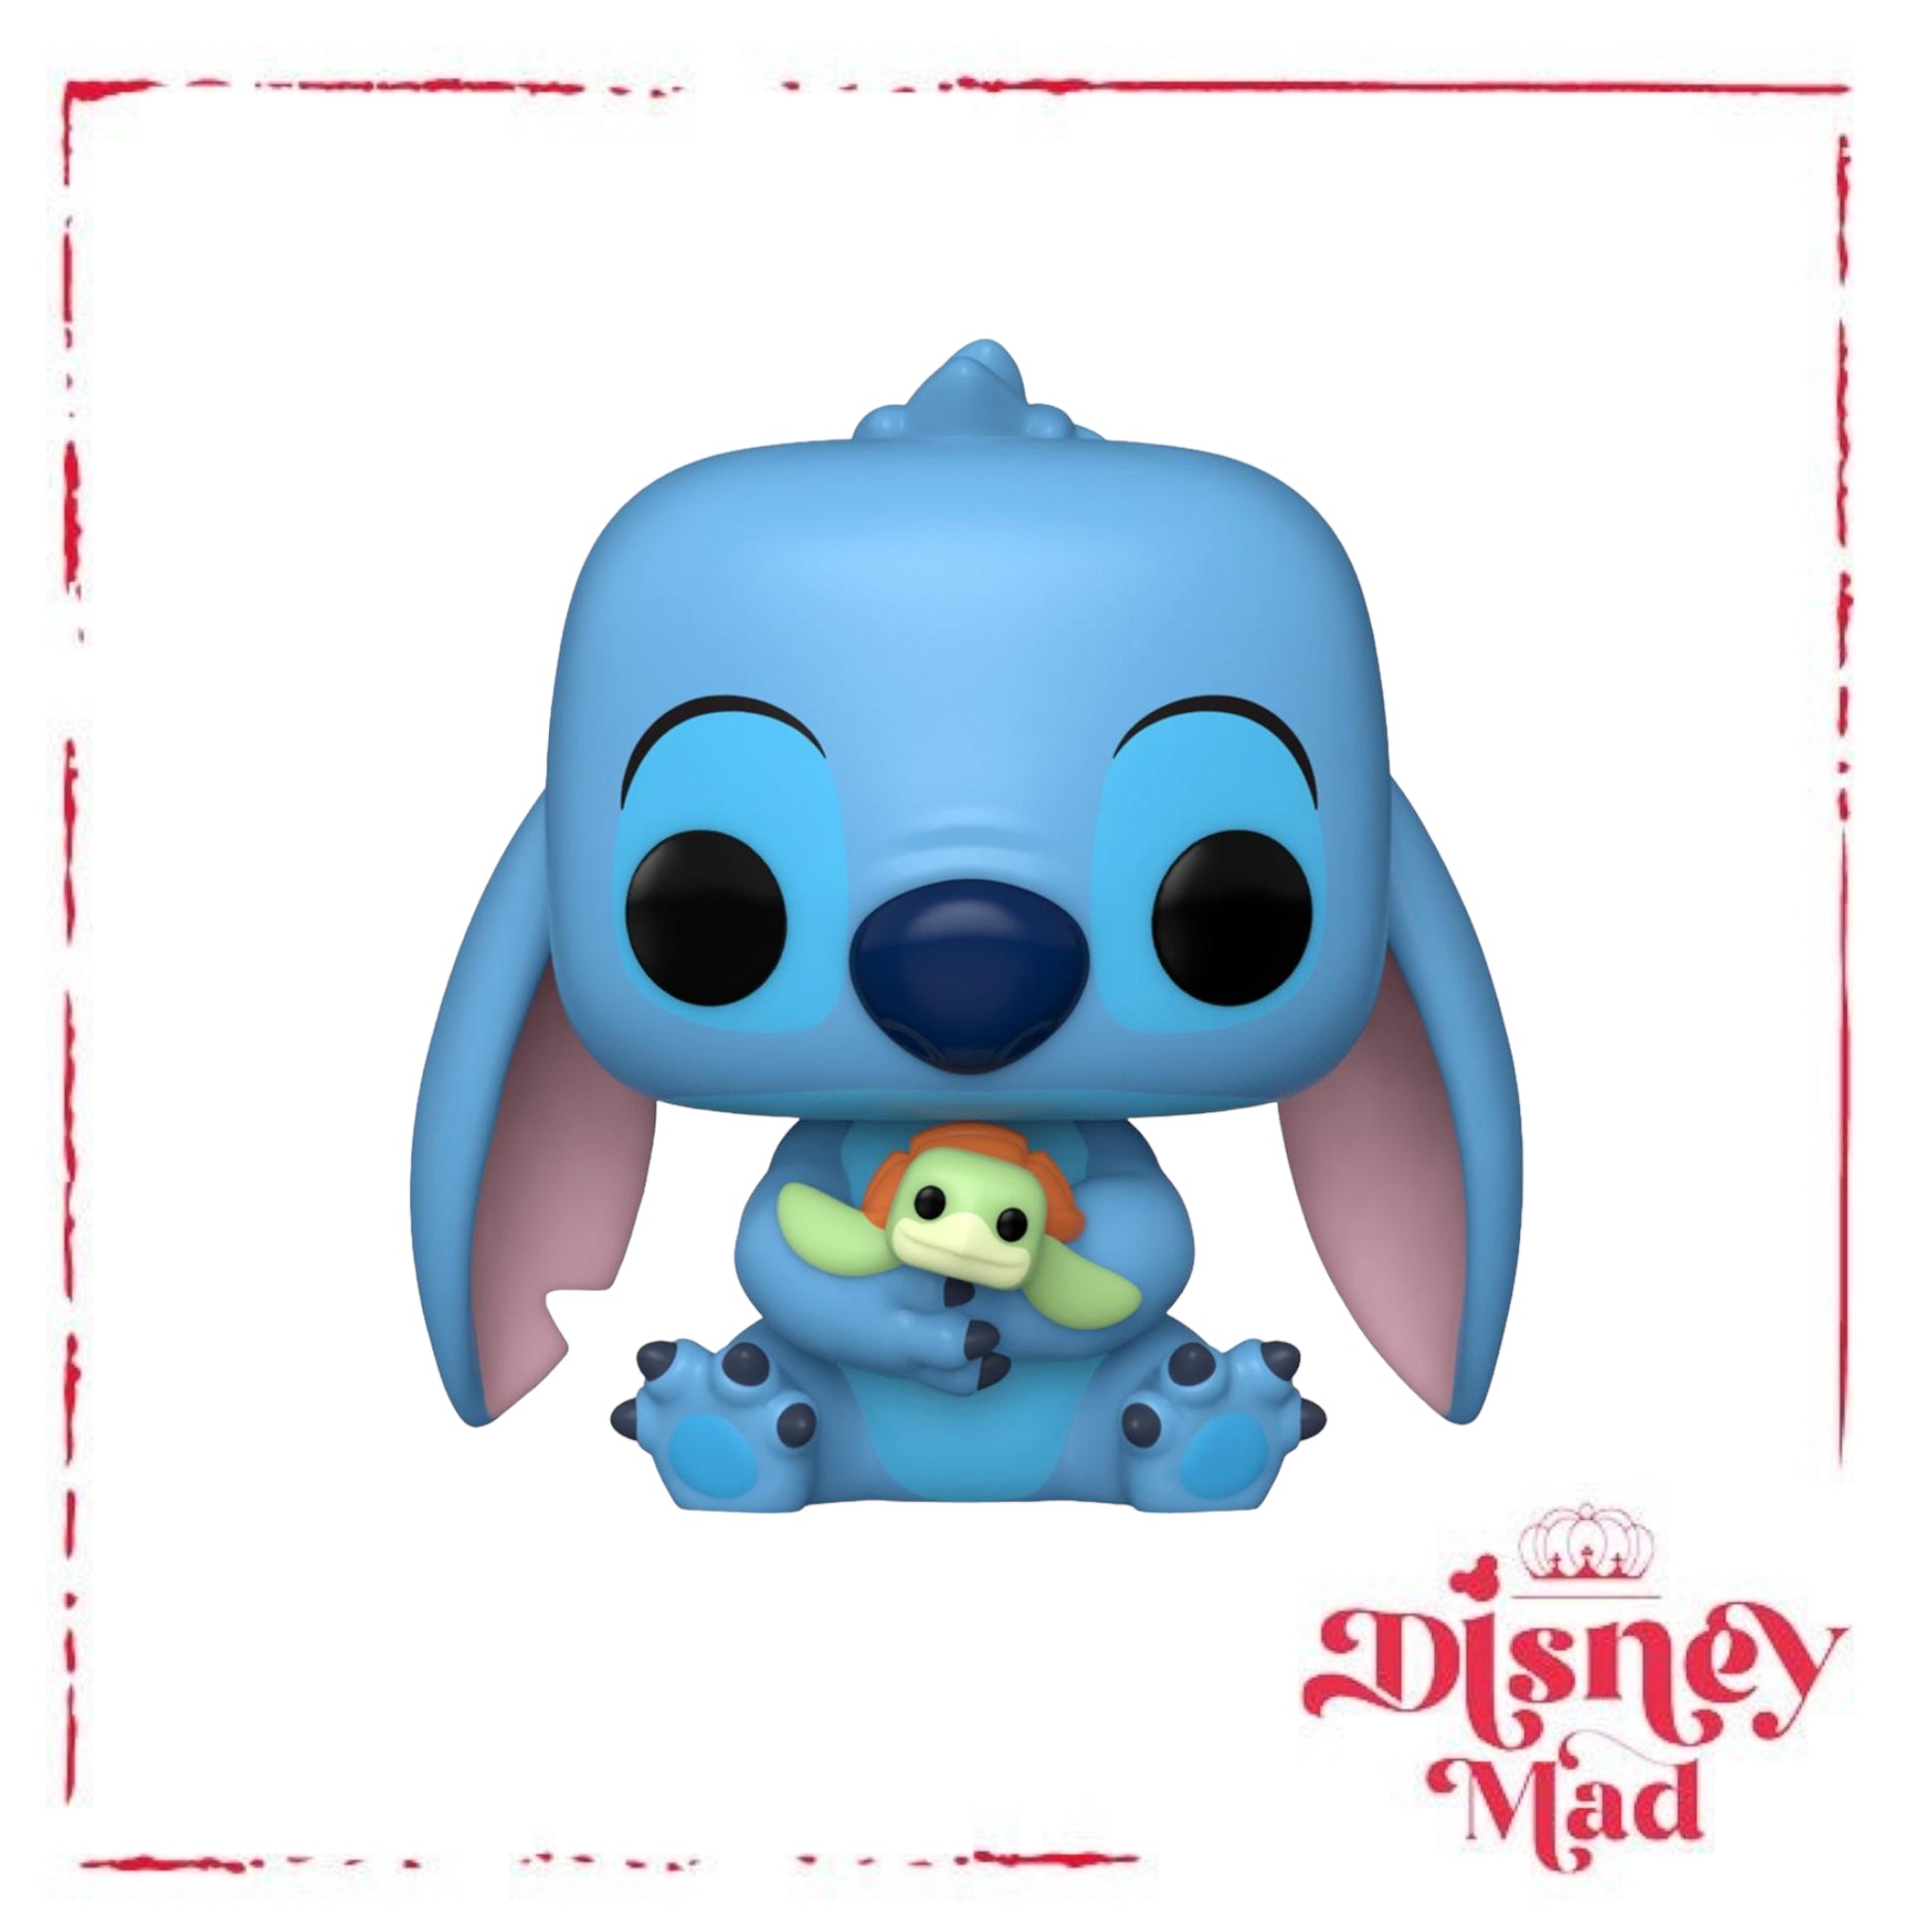 Funko Pop! Disney: Lilo & Stitch - Deluxe Stitch In Bathtub (Expo  Exclusive) Vinyl Figure